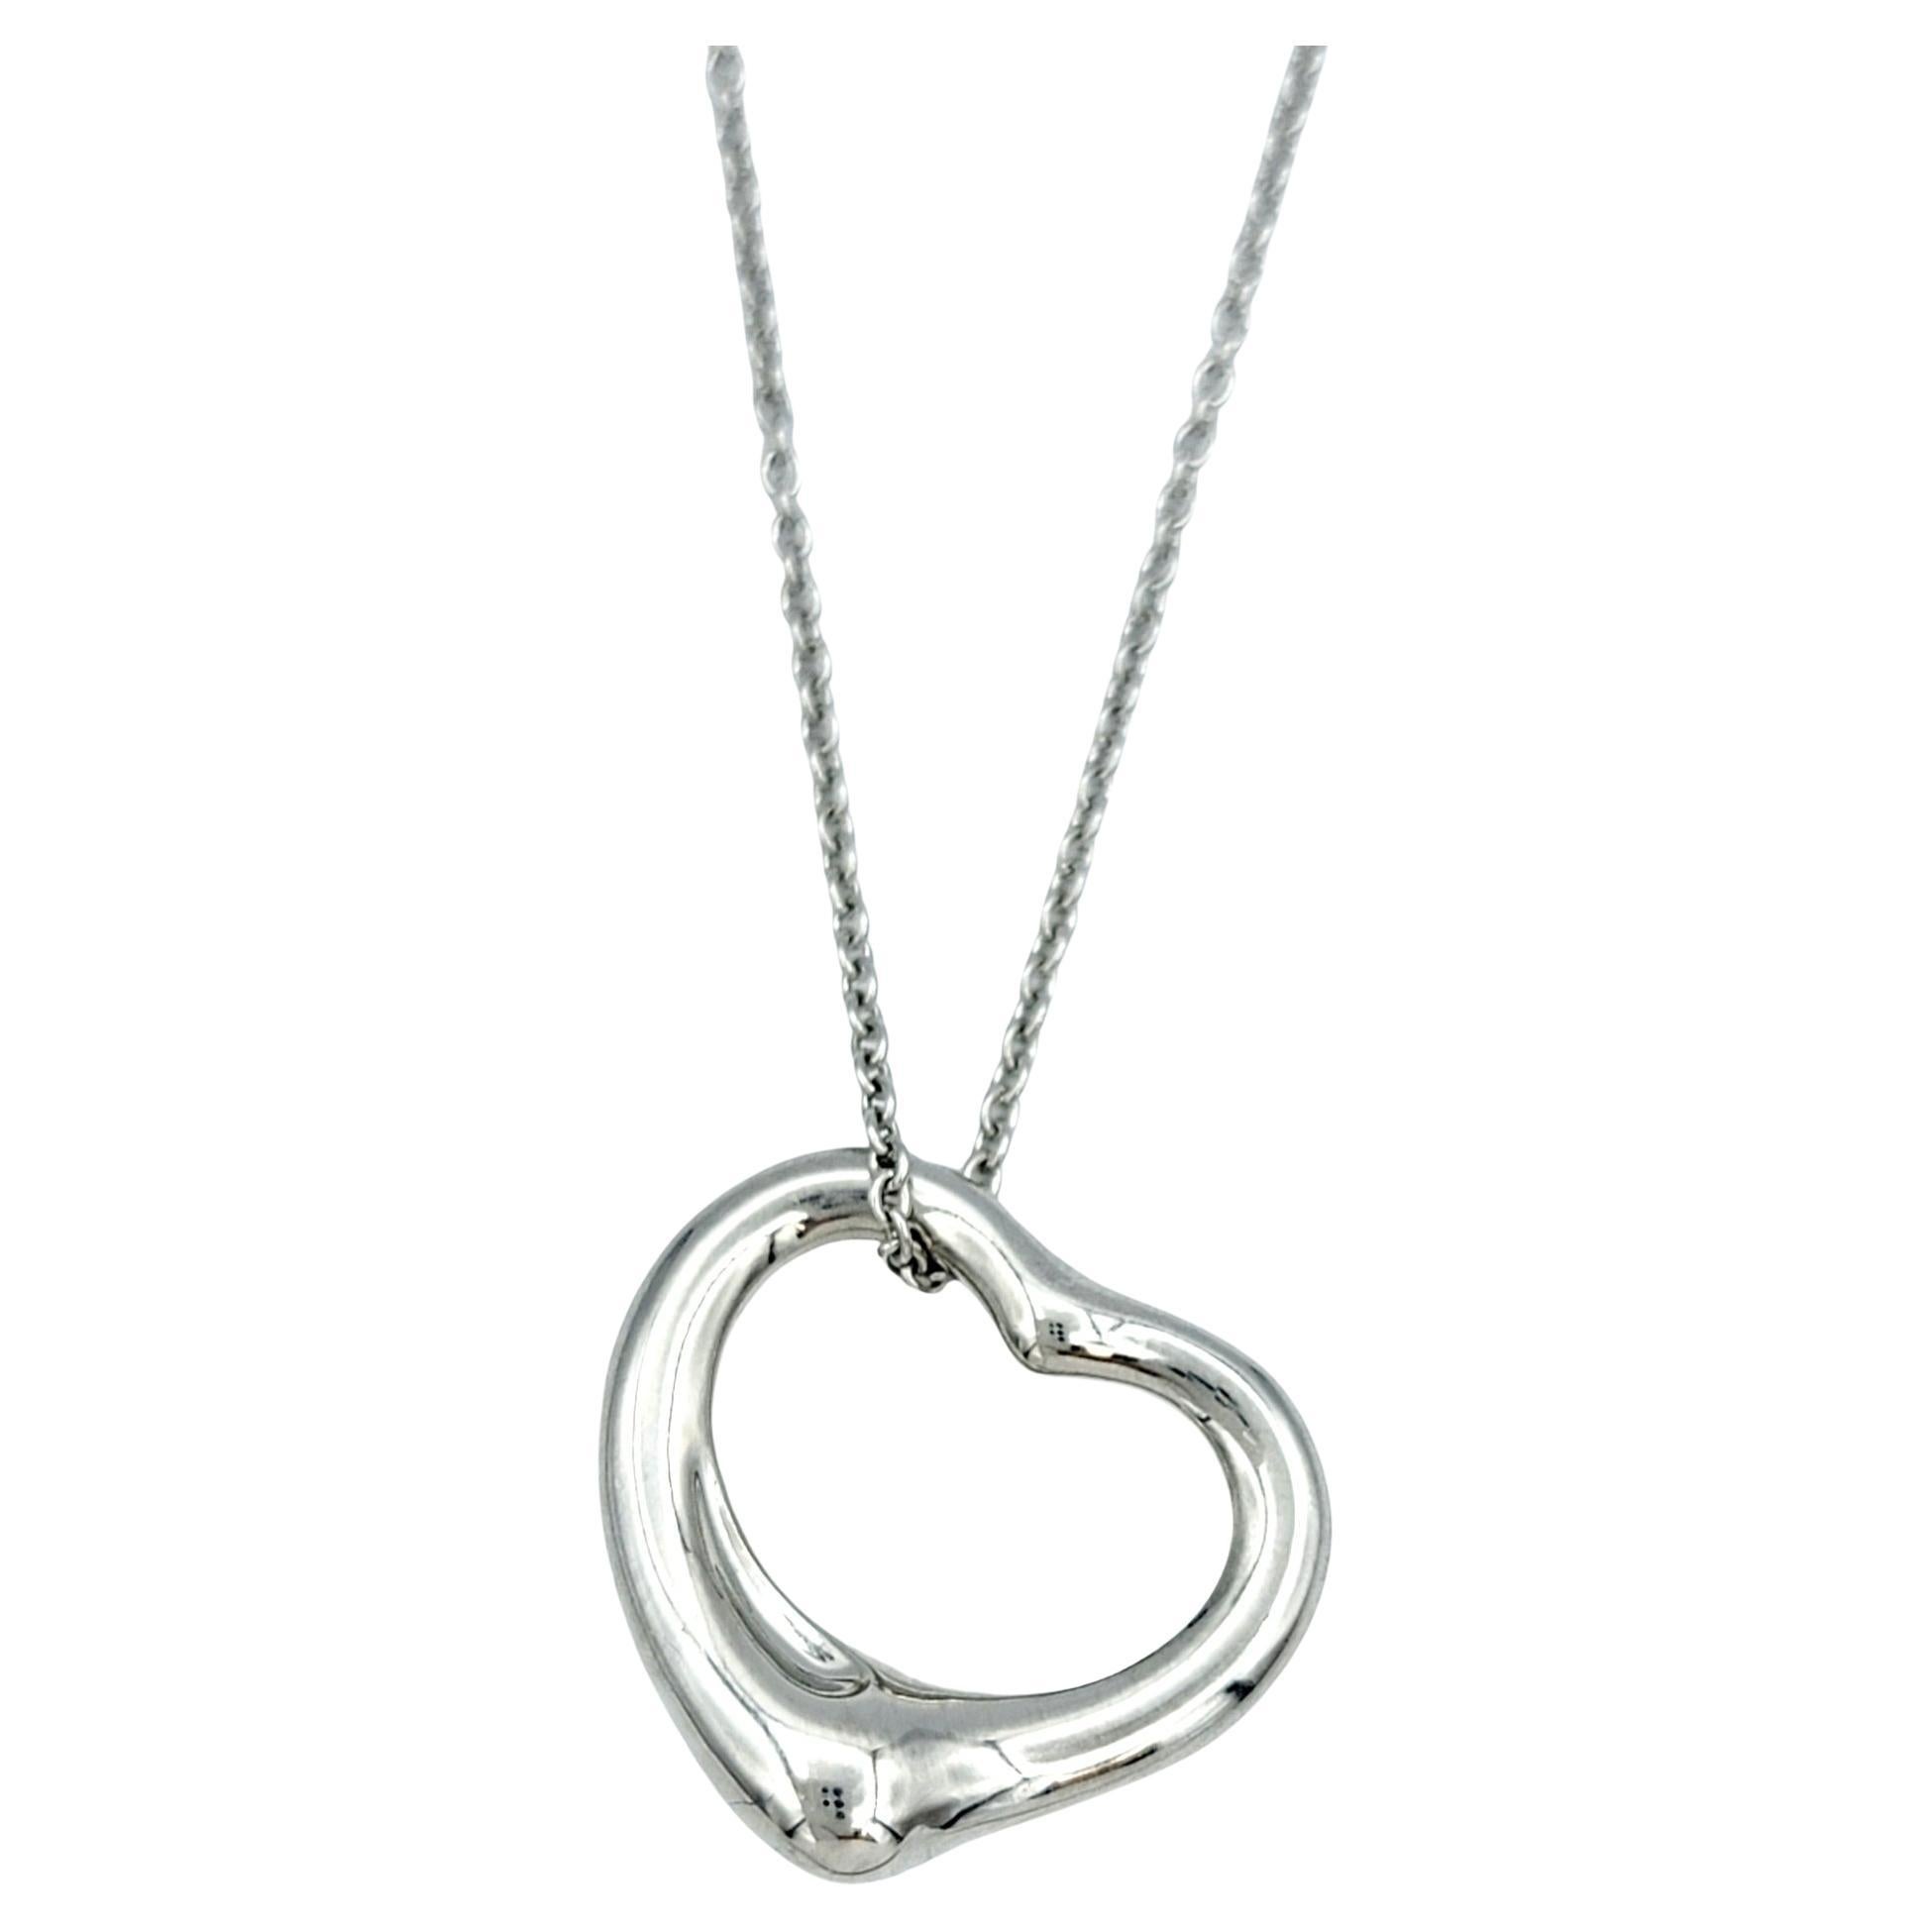 Tiffany & Co. Elsa Peretti Open Heart Pendant Chain Necklace Set in Platinum